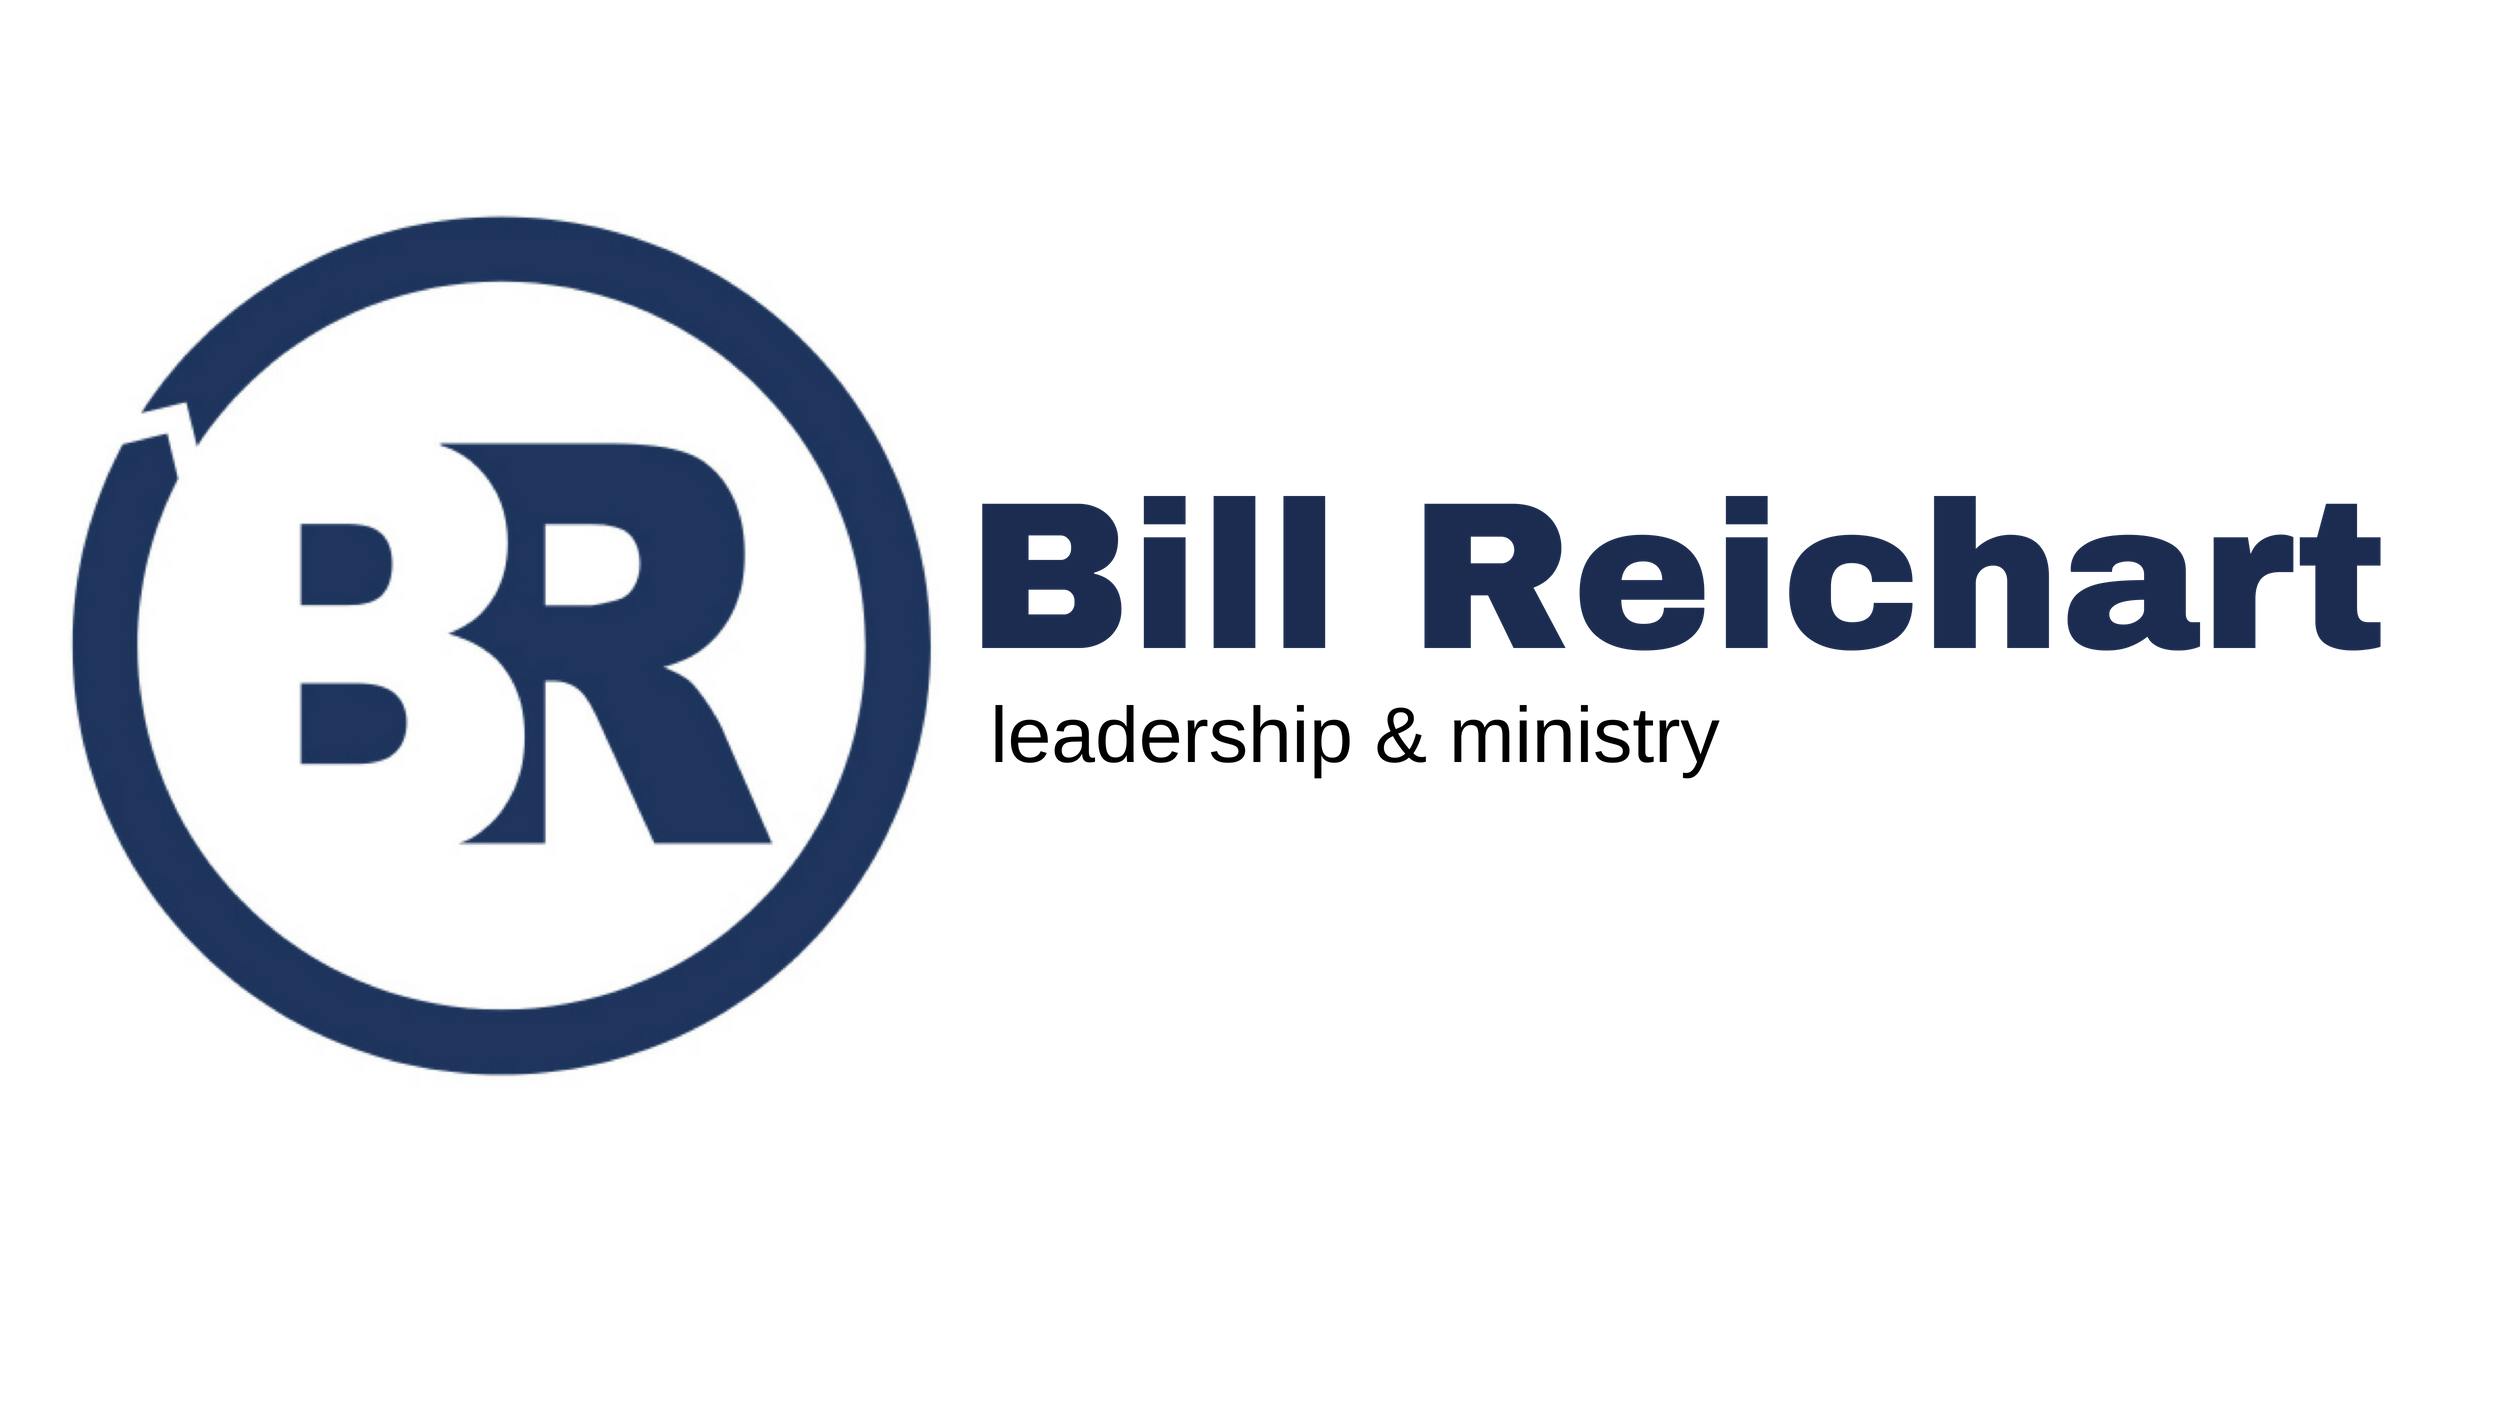   Bill Reichart